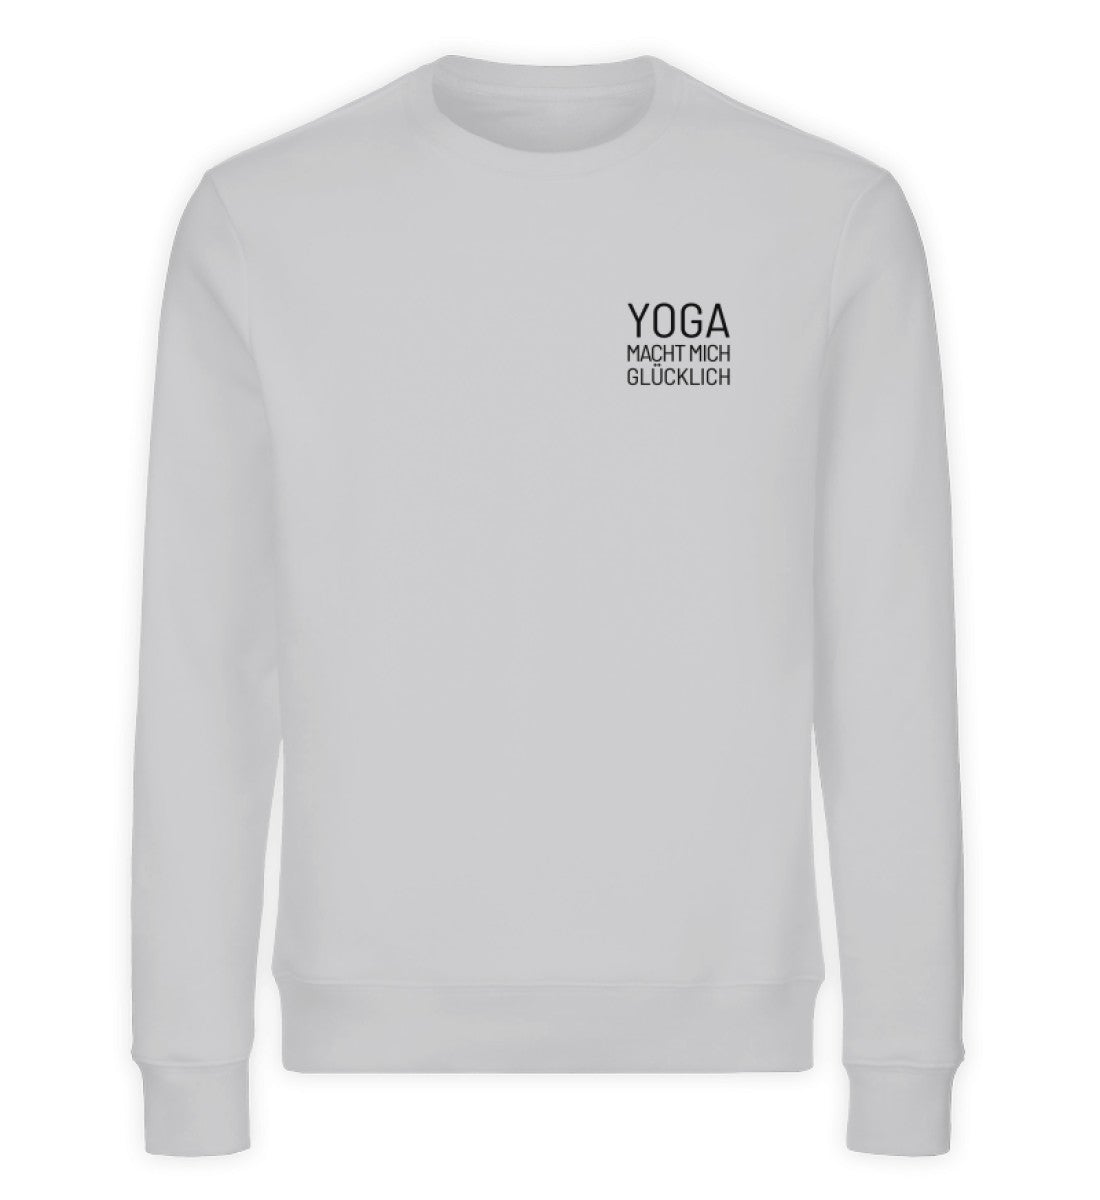 Yoga macht mich glücklich Bio Sweatshirt Unisex